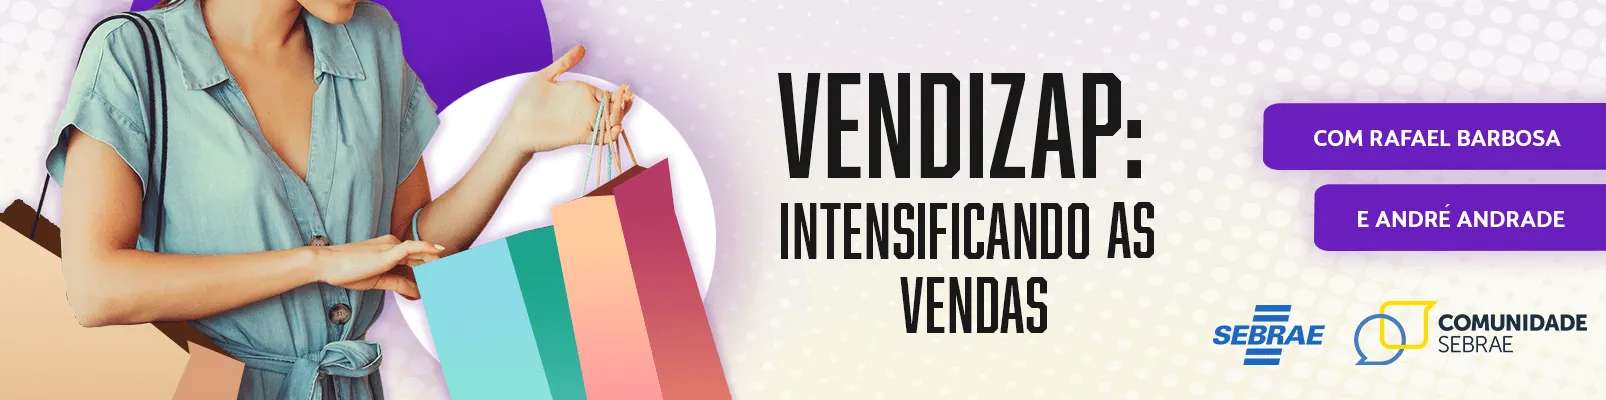 Vendizap: intensificando as vendas